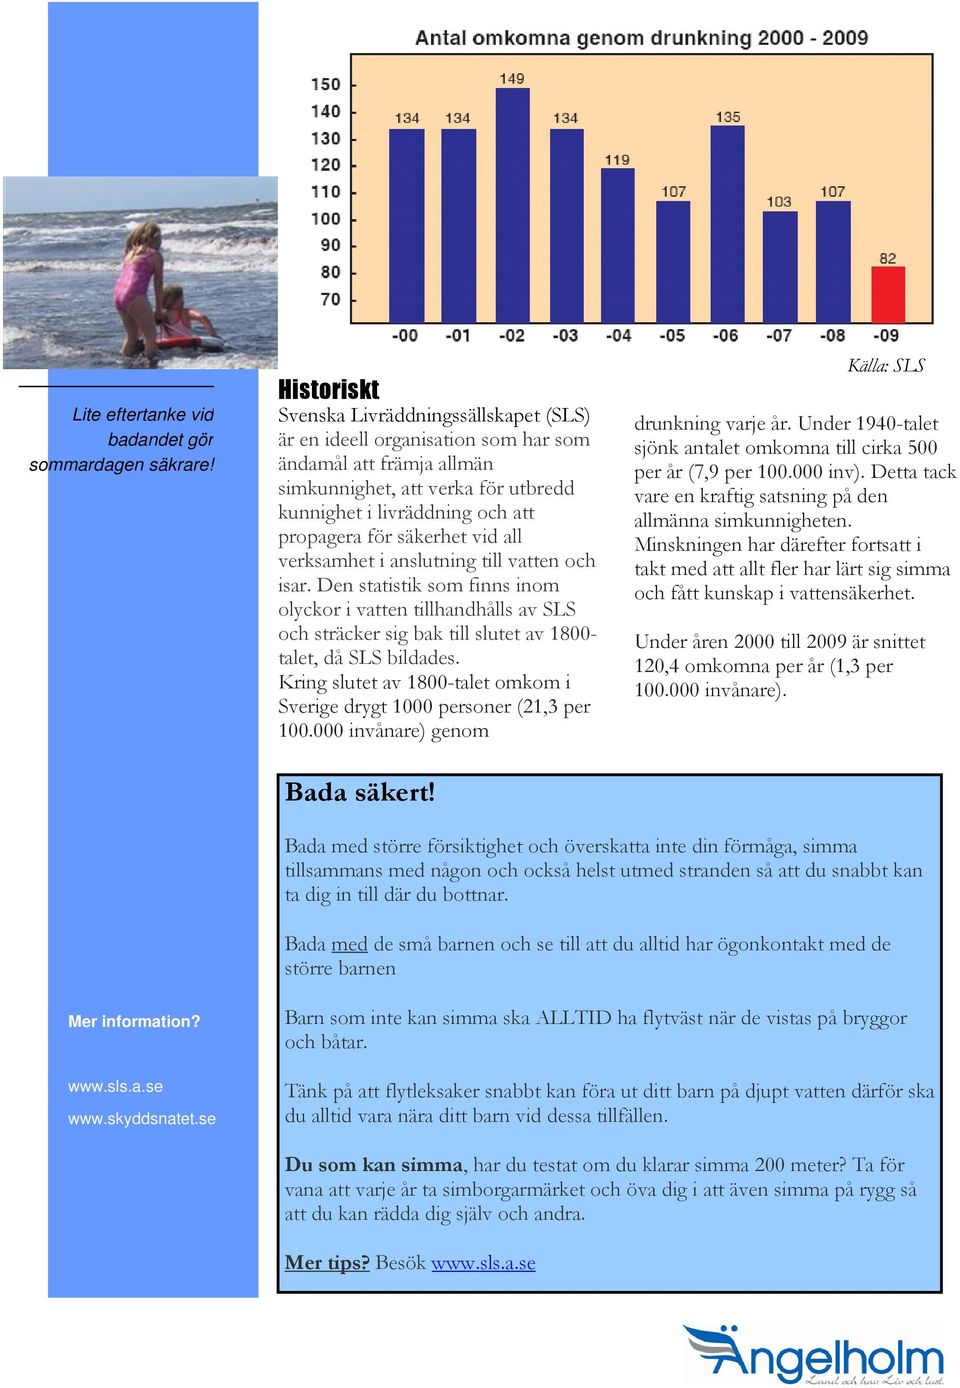 säkerhet vid all verksamhet i anslutning till vatten och isar. Den statistik som finns inom olyckor i vatten tillhandhålls av SLS och sträcker sig bak till slutet av 1800- talet, då SLS bildades.